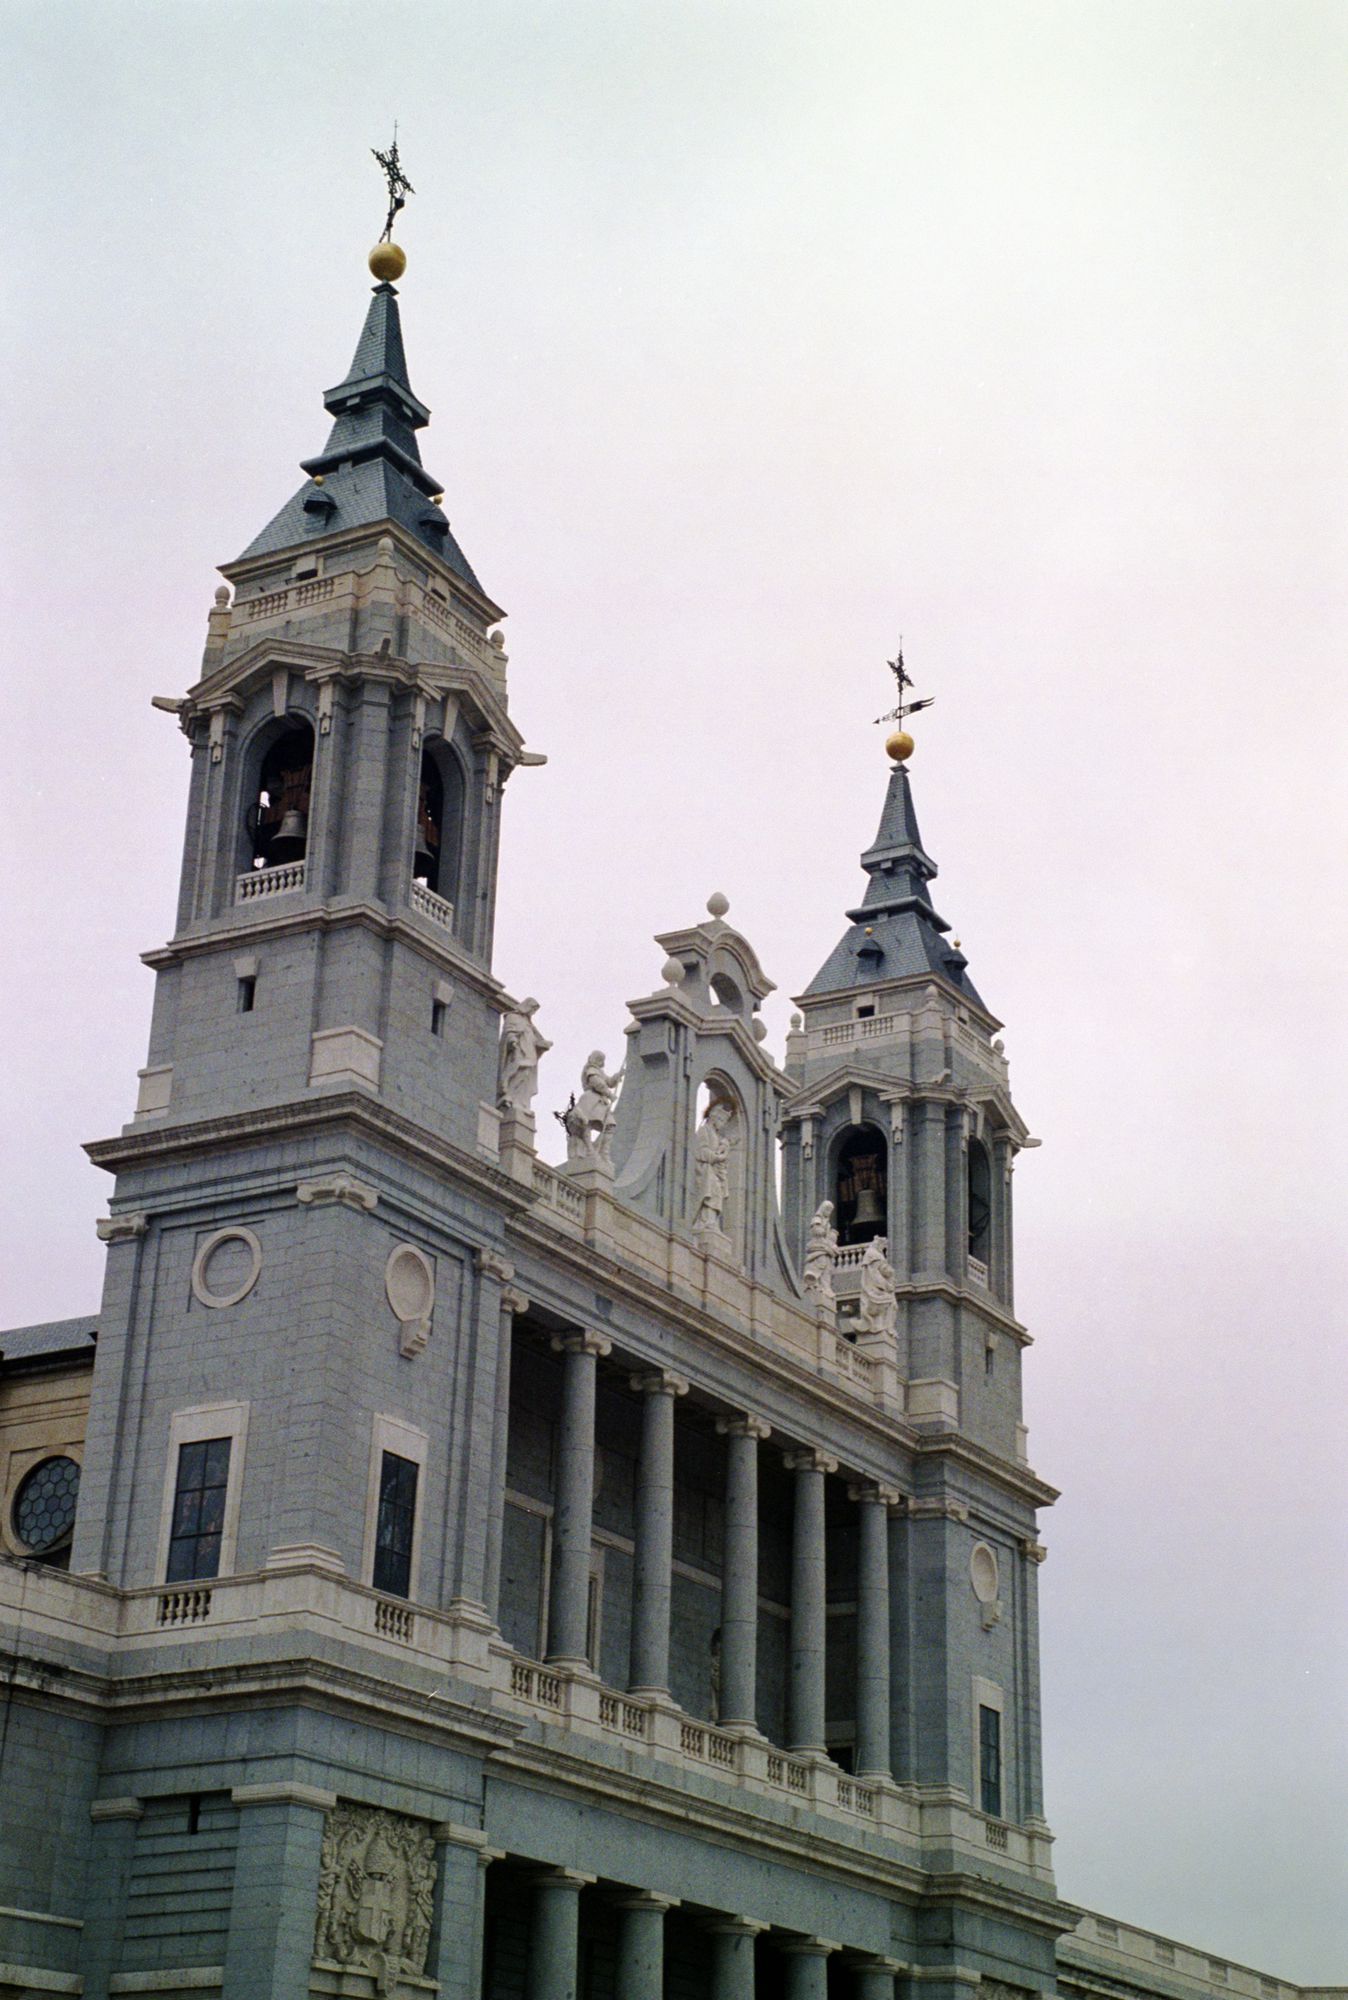 Cathedral de la Almudena